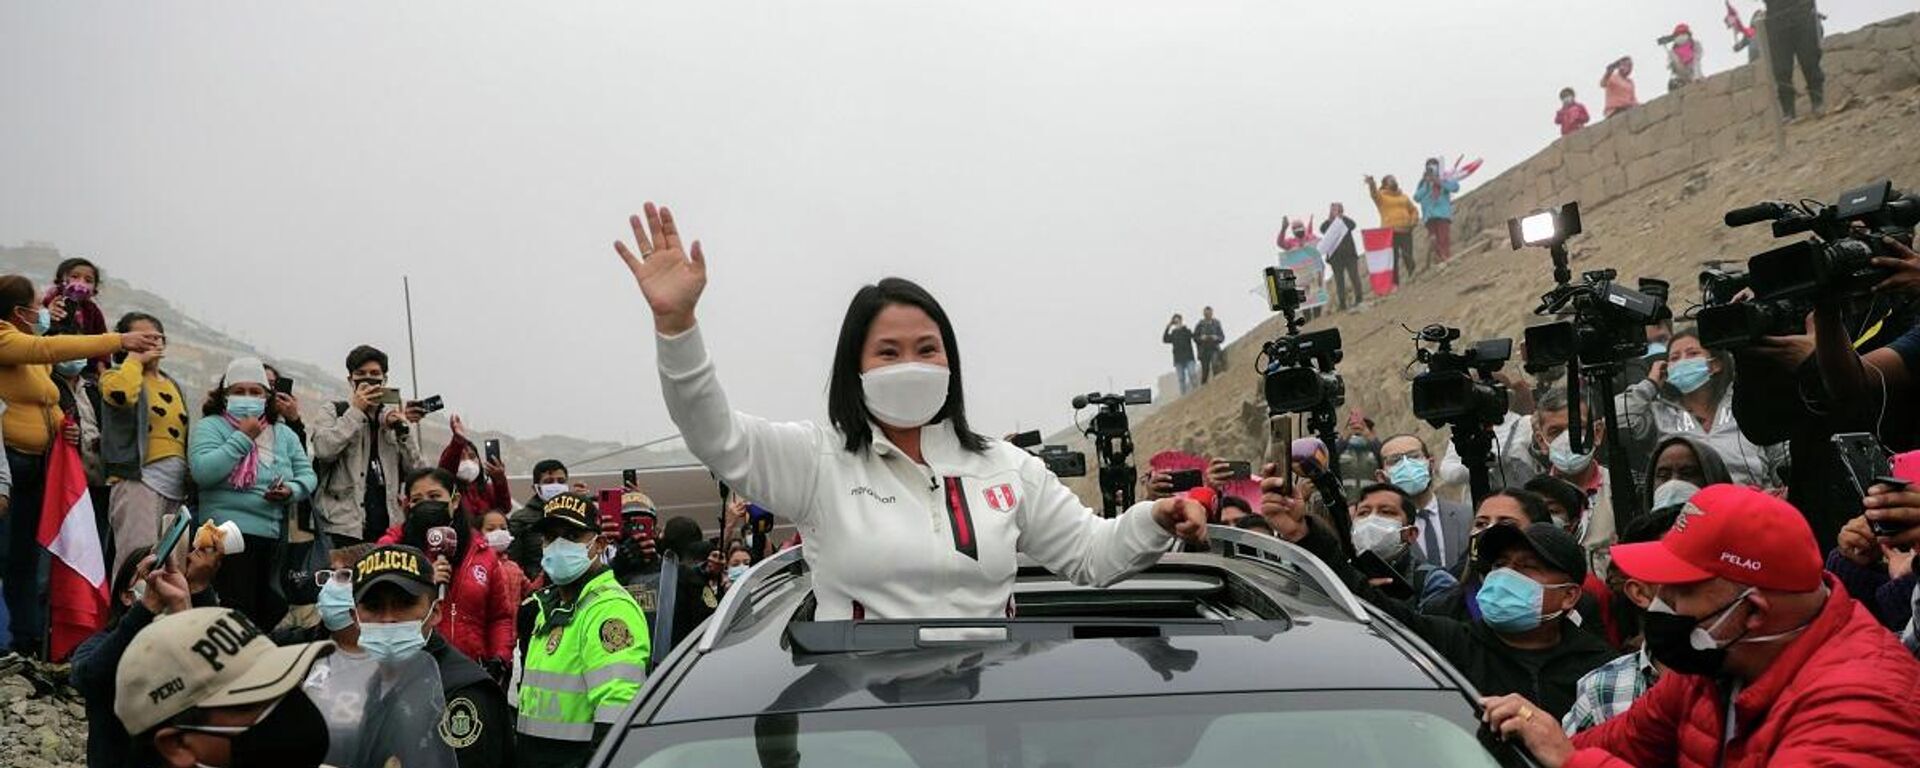  Keiko Fujimori, la candidata de derecha en las elecciones generales en Perú - Sputnik Mundo, 1920, 17.06.2021